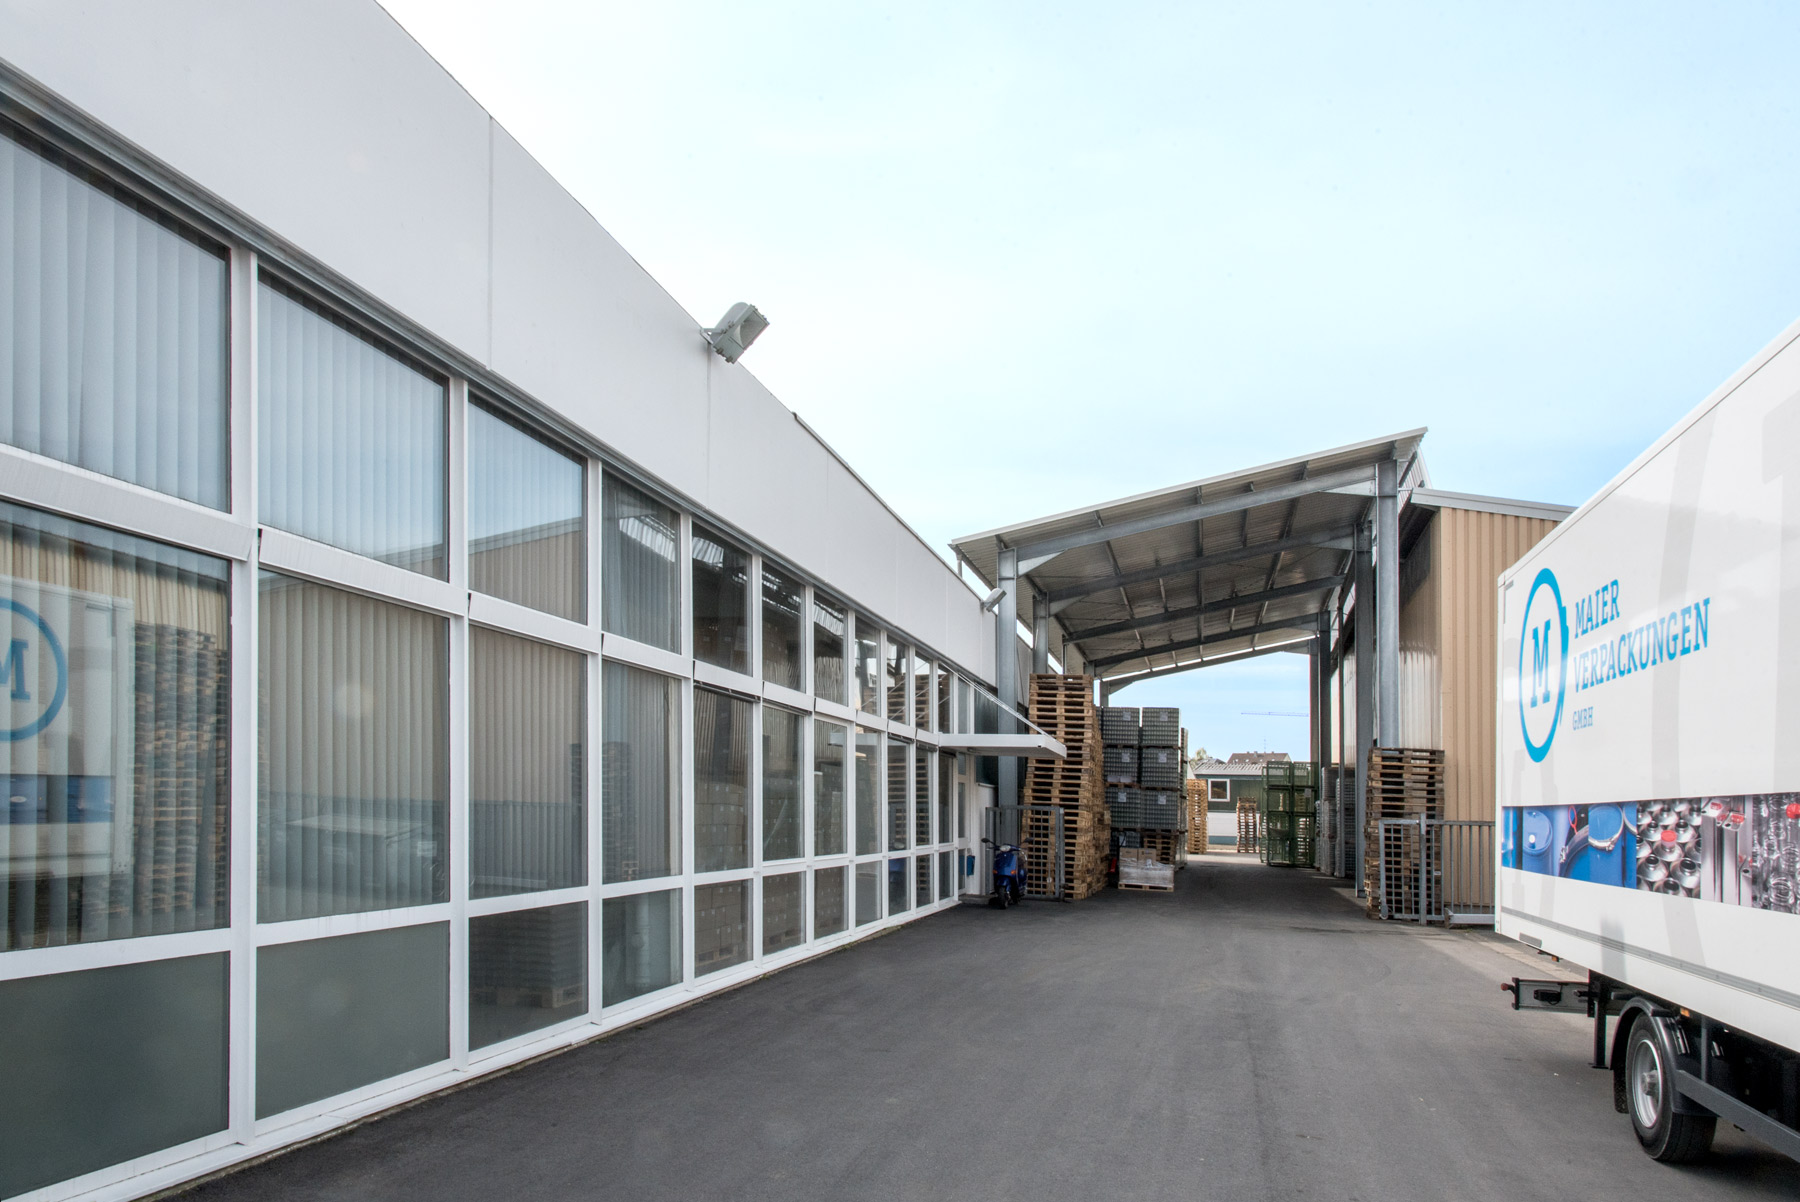 Neue und alte Lagerhalle der Maier Verpackungen GmbH samt überdachtem Übergang